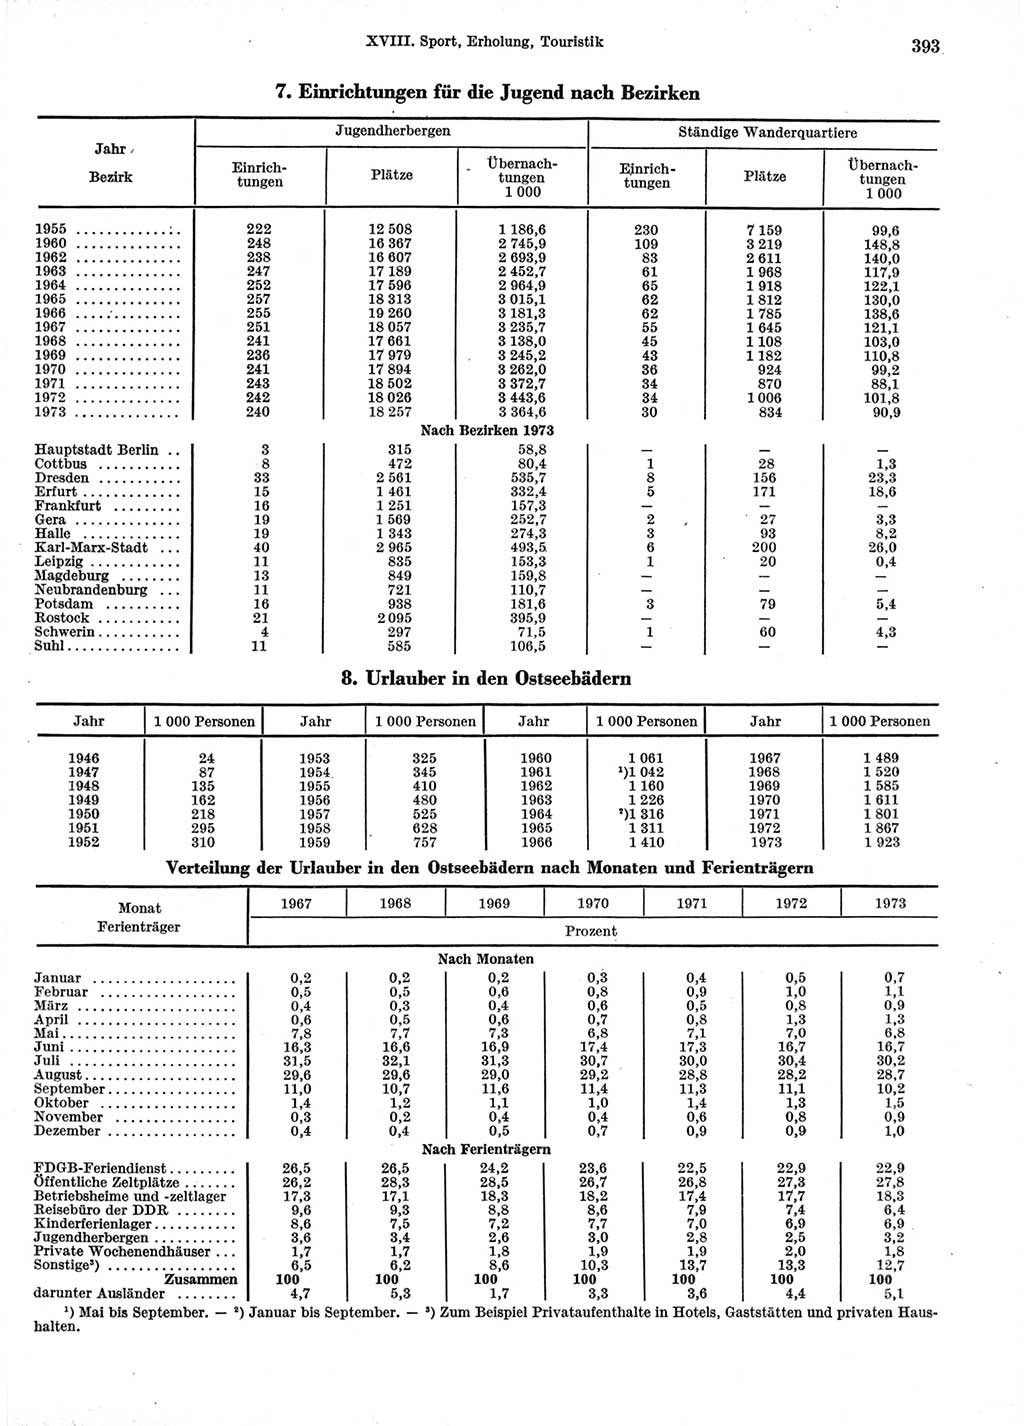 Statistisches Jahrbuch der Deutschen Demokratischen Republik (DDR) 1974, Seite 393 (Stat. Jb. DDR 1974, S. 393)